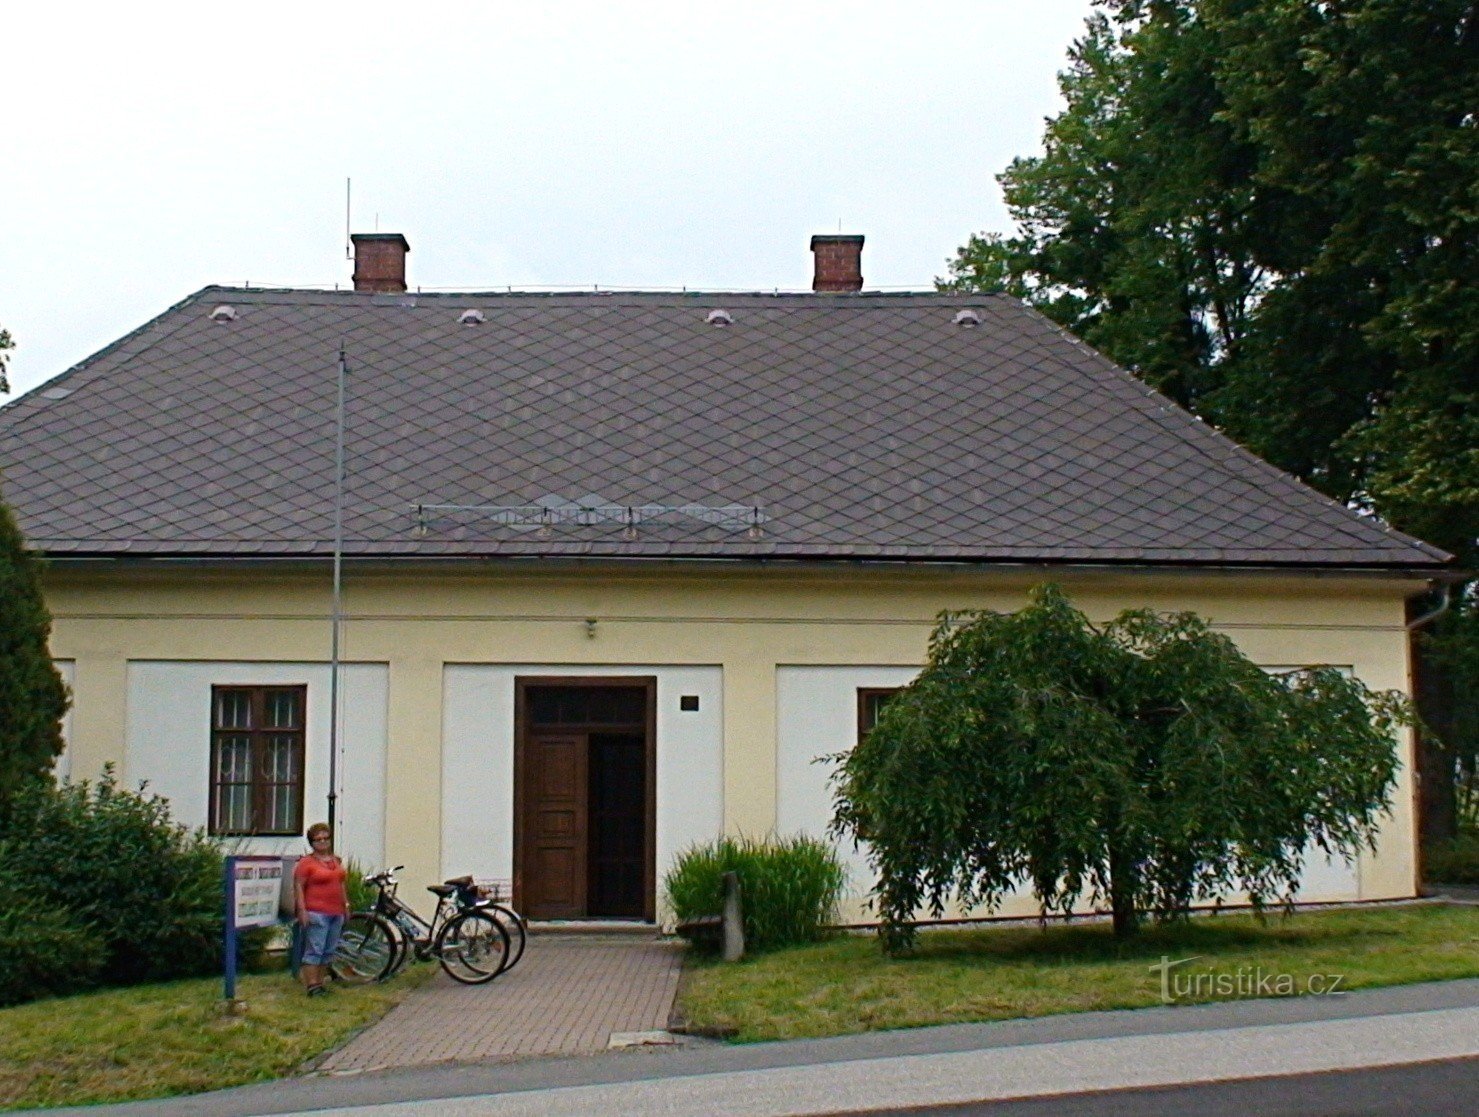 Τεχνικό Μουσείο Petřvald στο πρώην πρυτανείο